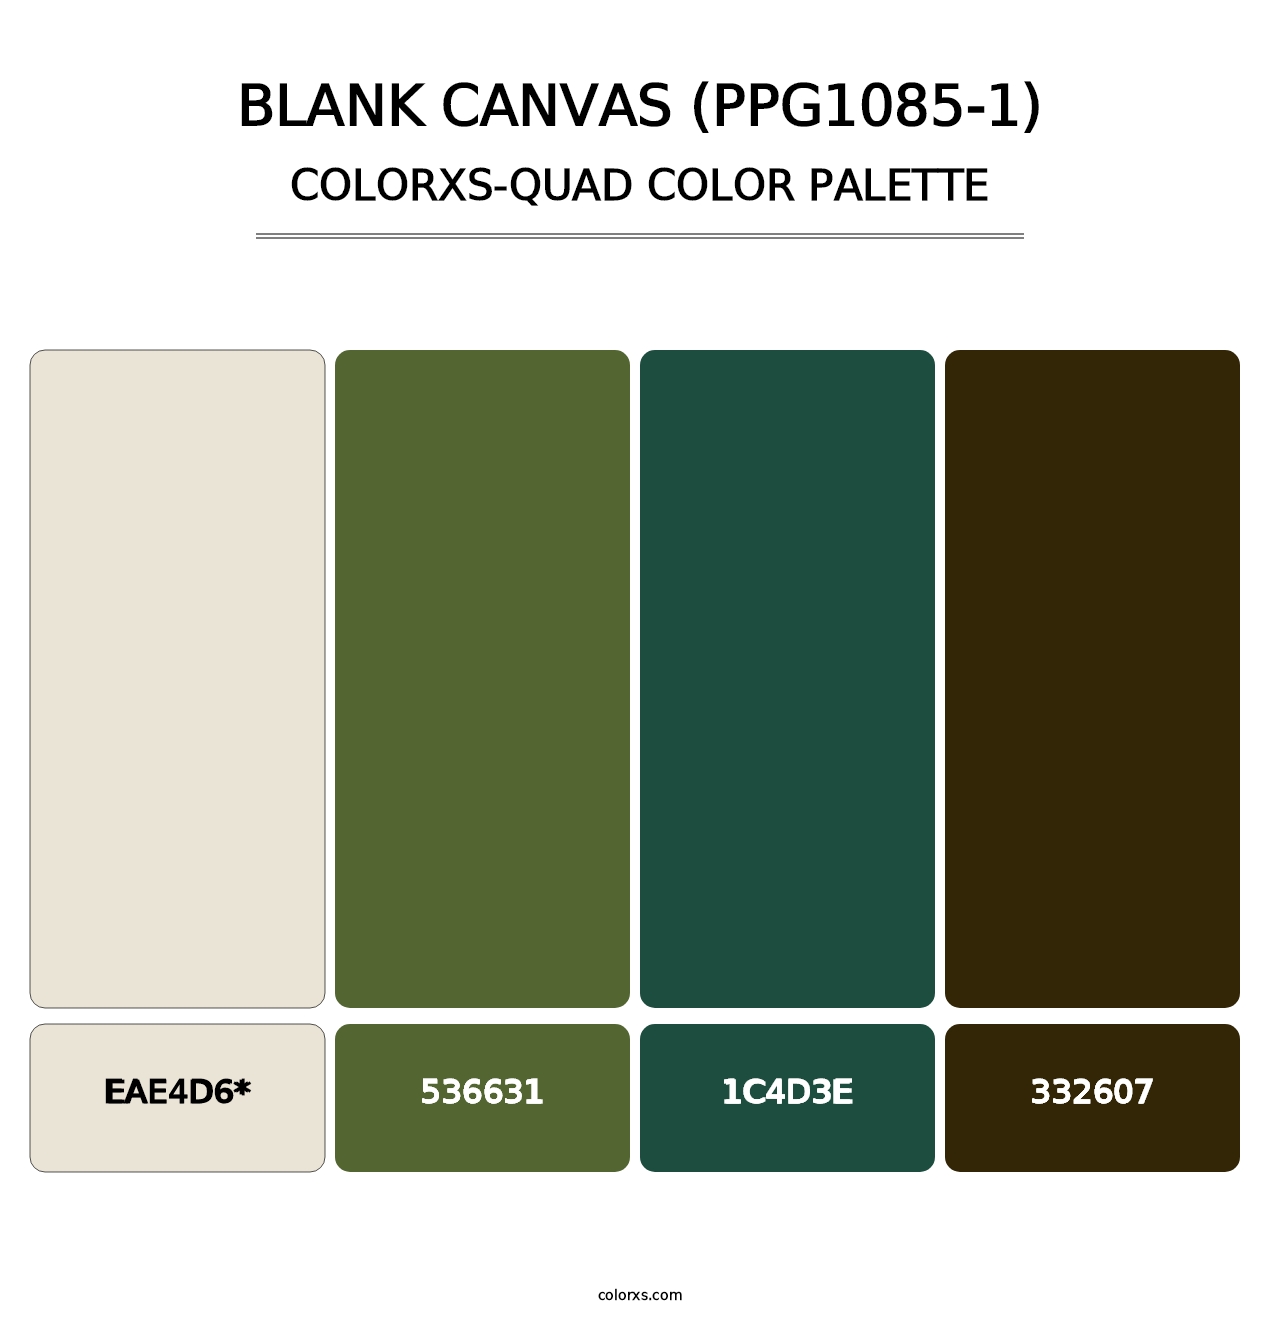 Blank Canvas (PPG1085-1) - Colorxs Quad Palette